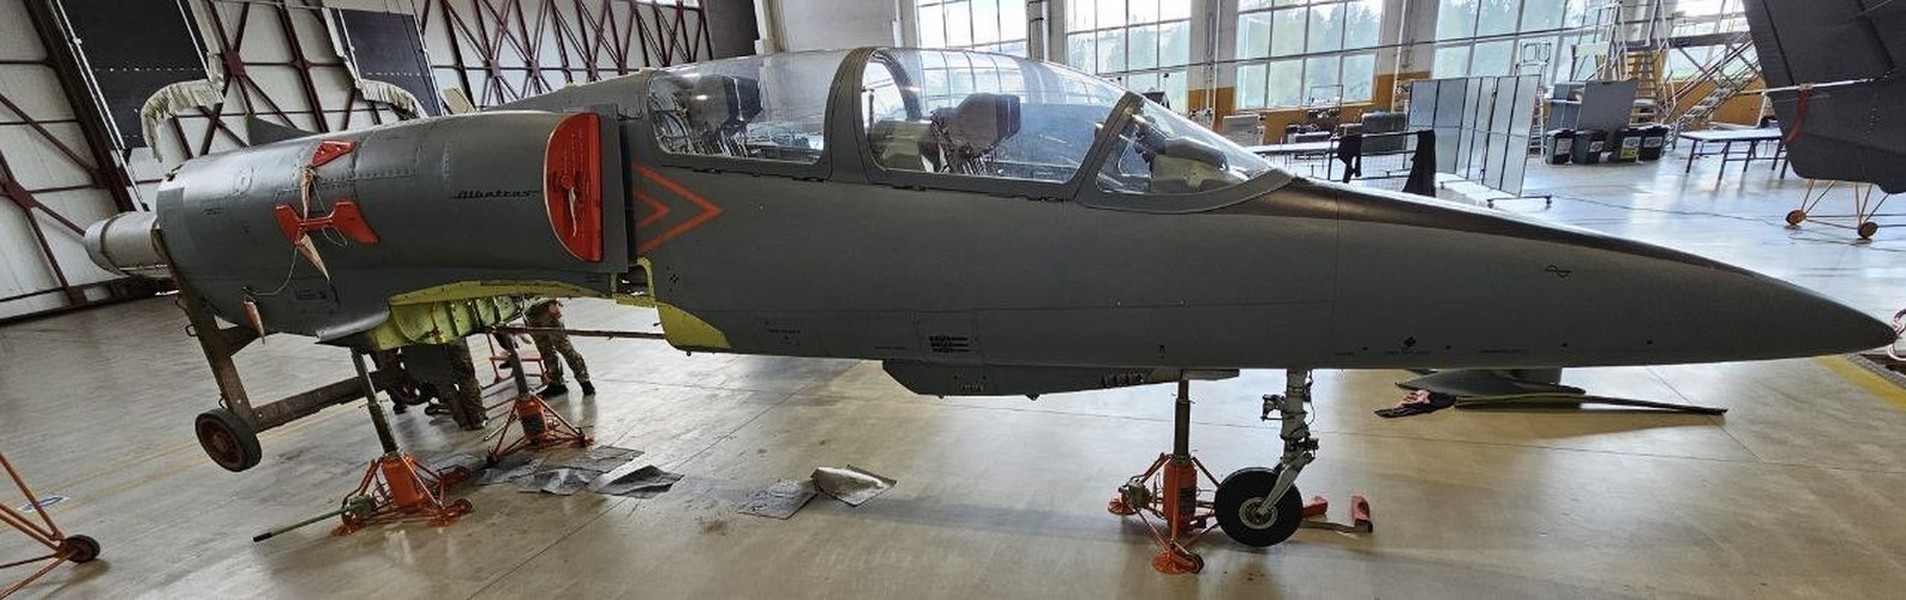 Cường kích L-39ZA mới nhận giúp ích gì cho Không quân Ukraine?